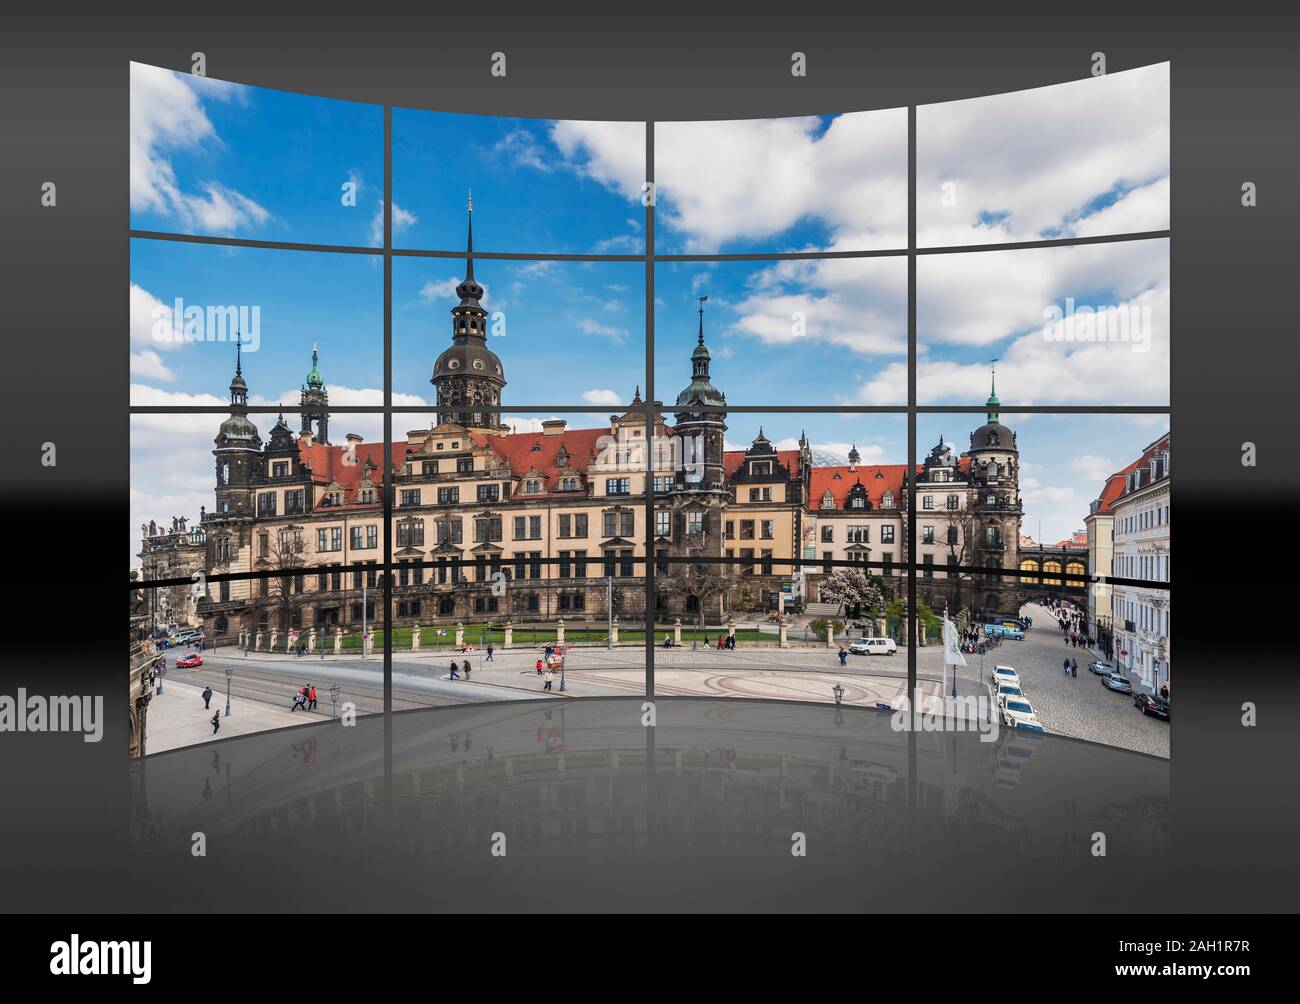 Eine gekrümmte Wand. 16 kleine Bilder geben ein ganzes Bild. Zu er Dresden Royal Palace, Dresden, Sachsen, Deutschland, Europa Stockfoto